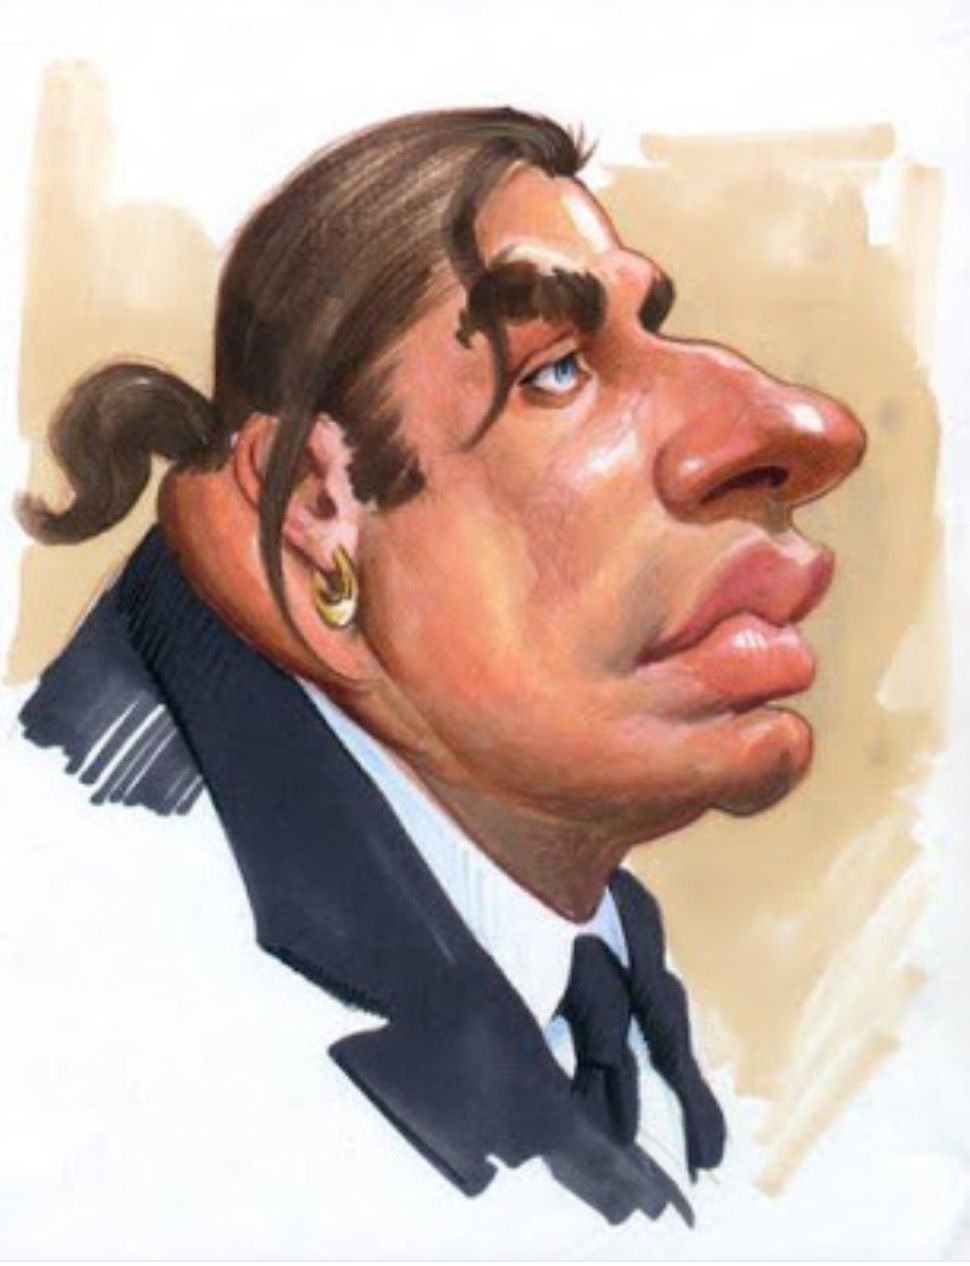 Сатирические шаржи человека. Сатирический портрет Обама. Джон Траволта шарж. Джон Траволта карикатура.